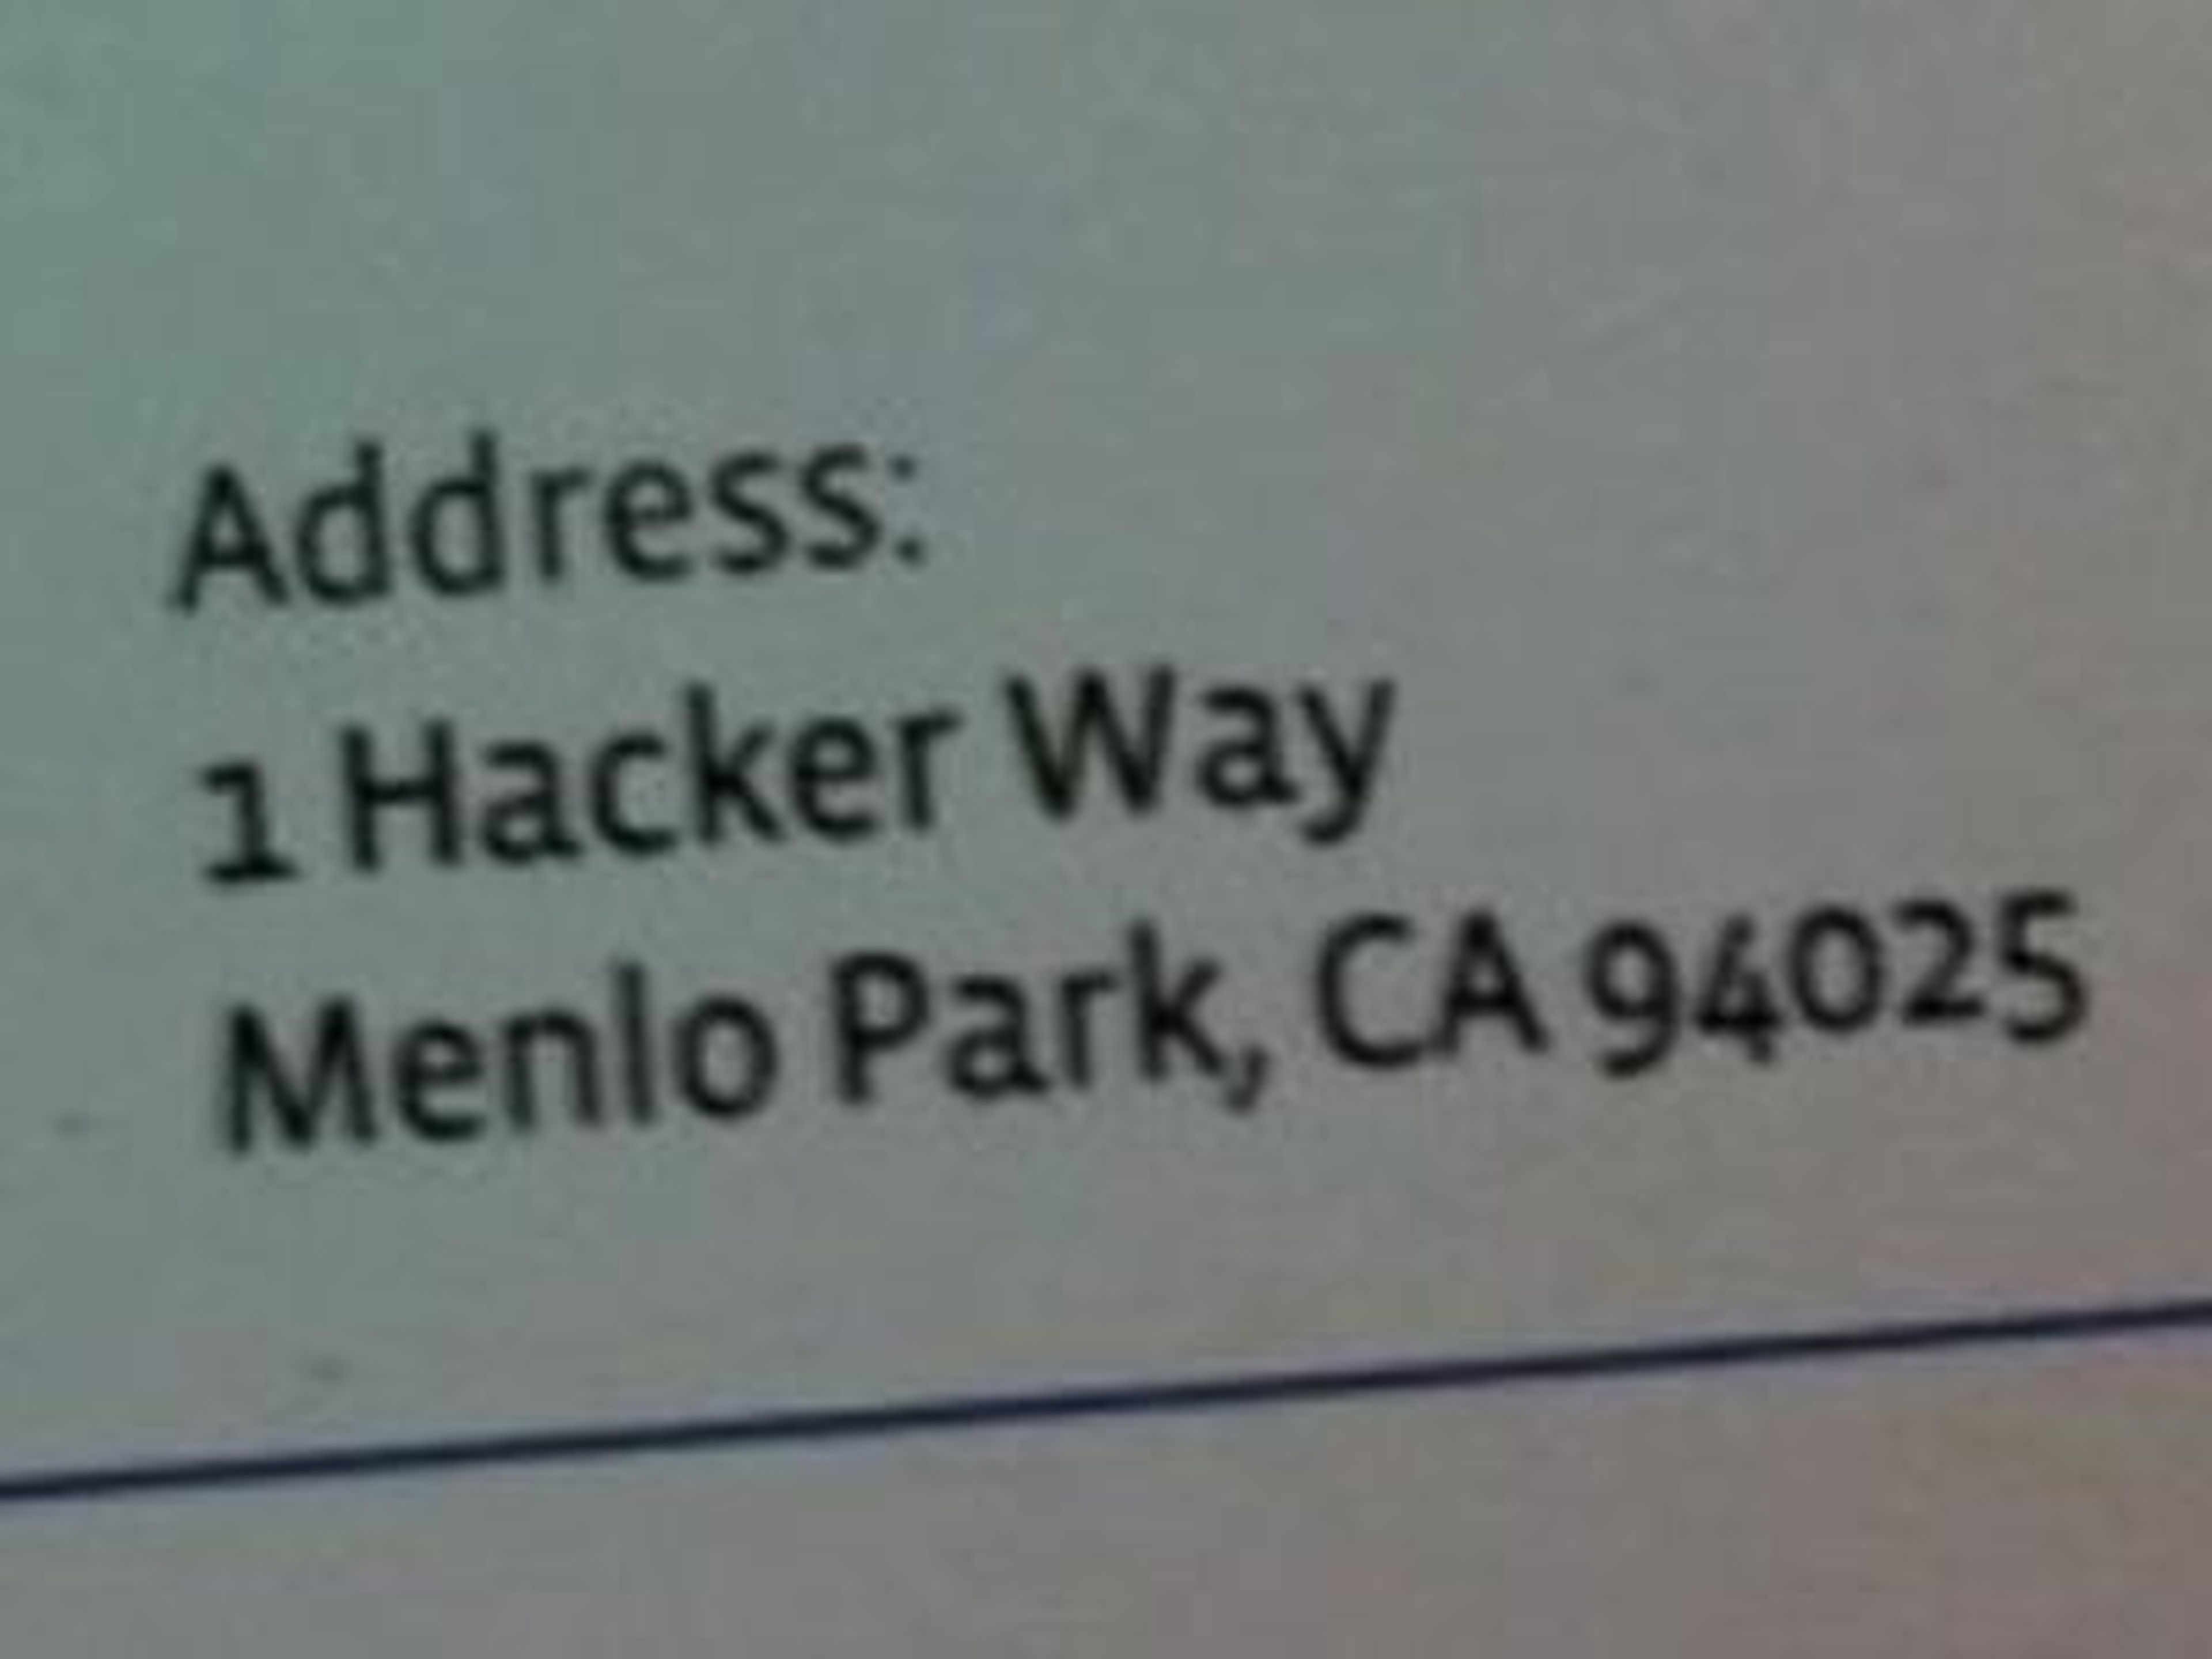 Facebook nombró la calle principal del campus "Hacker Way".